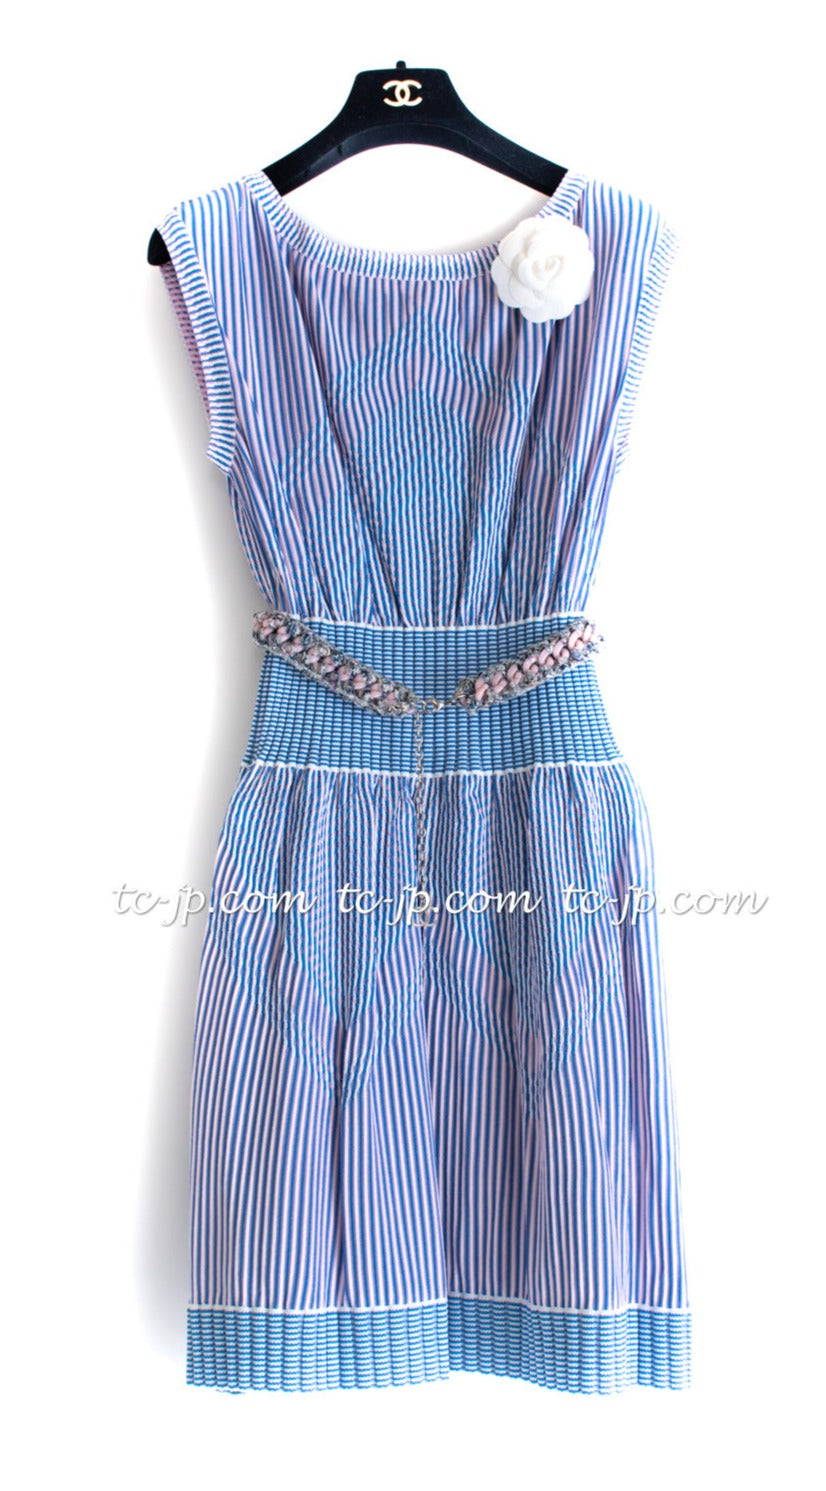 CHANEL 14S Knit Boat Neck Stripe Dress 40 42 シャネル ブルー・ストライプ・ワンピース 即発